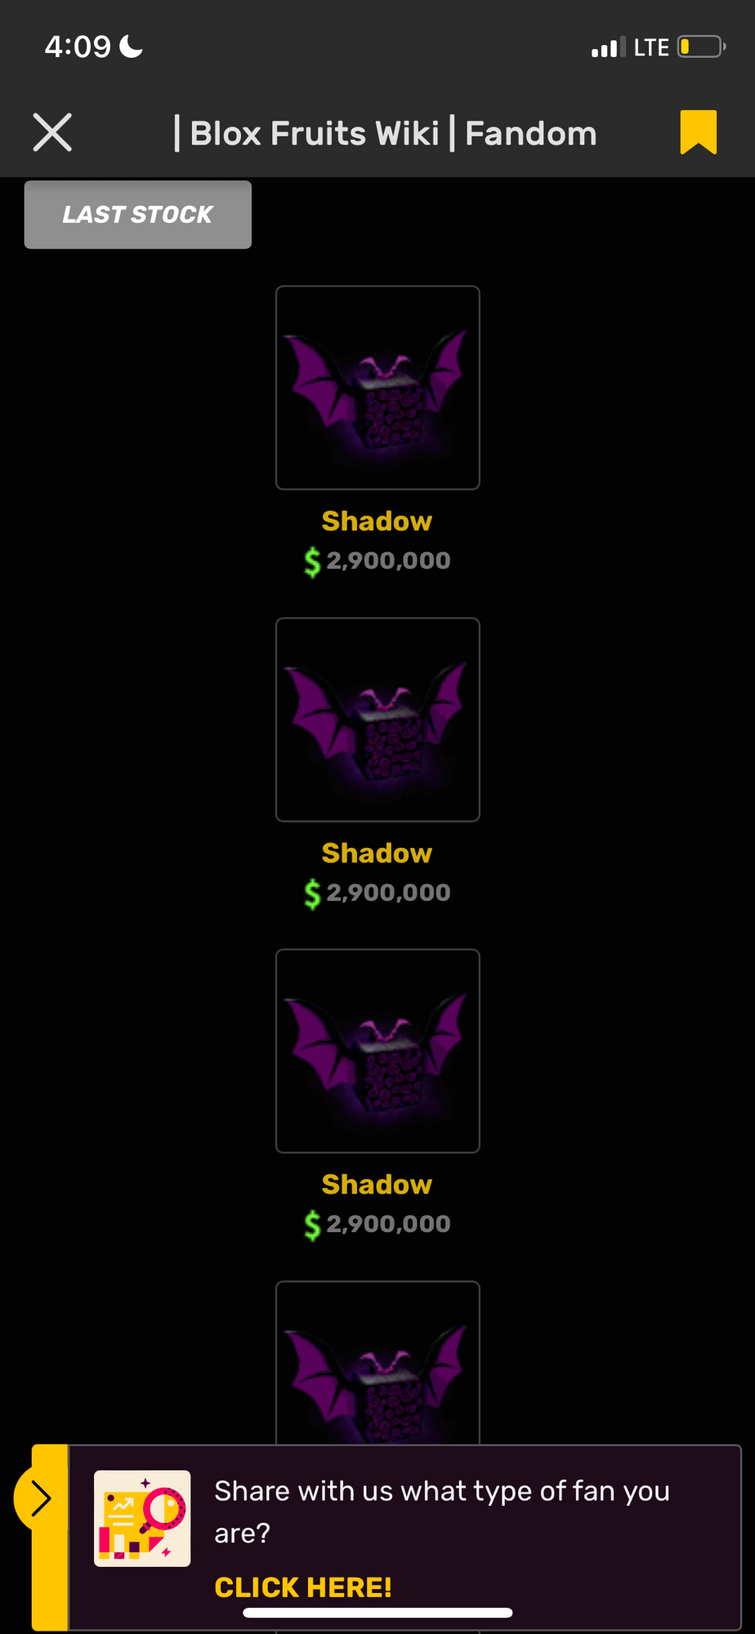 Shadow, Blox Fruits Wiki